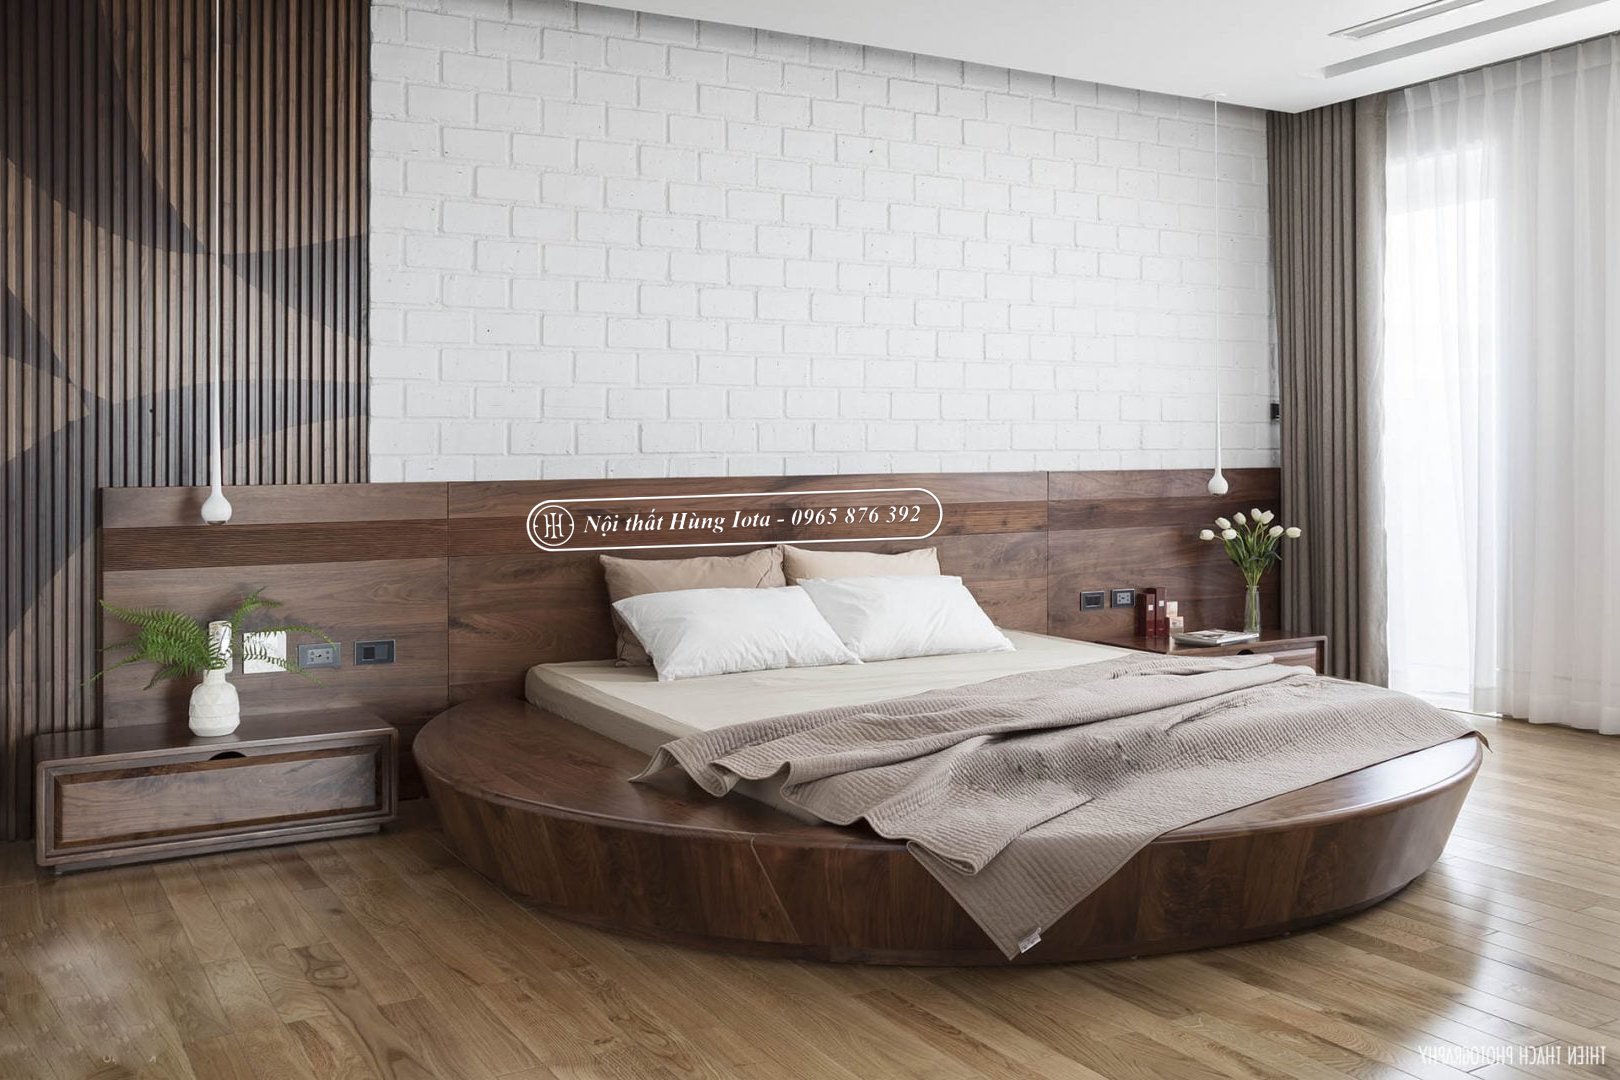 Giường ngủ hình tròn gỗ óc chó cao cấp GN01 giá rẻ tại xưởng sản xuất